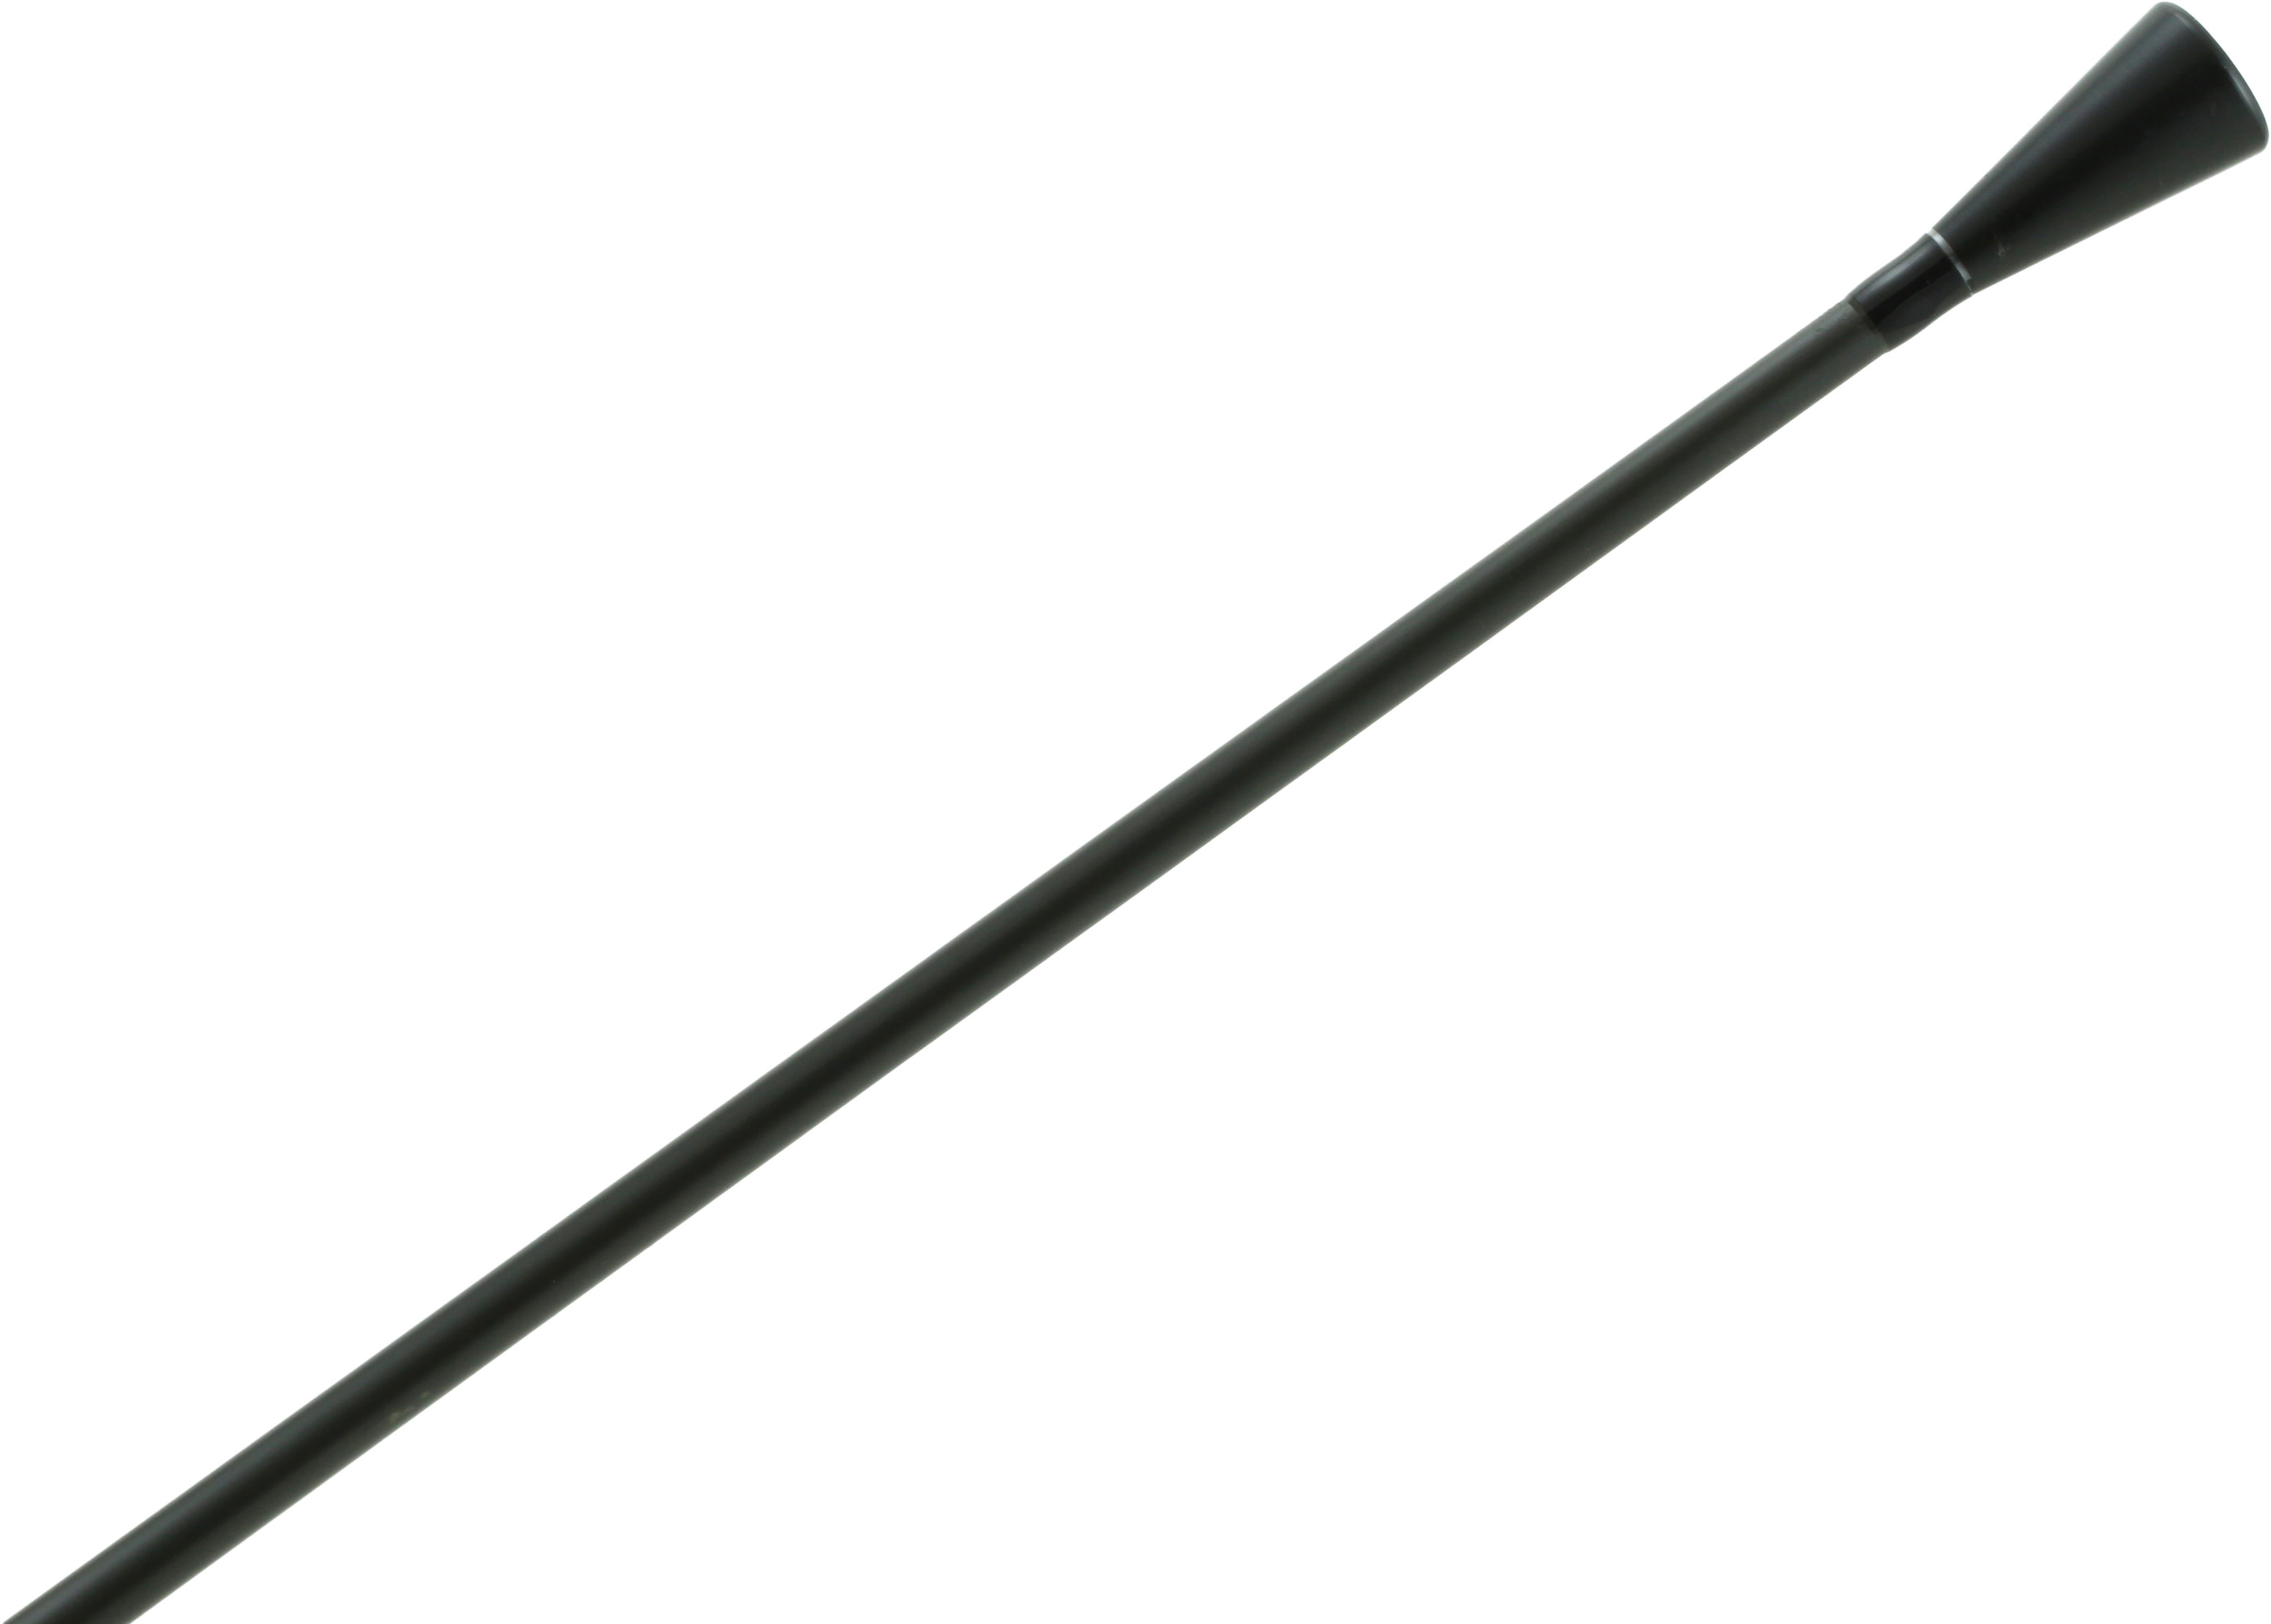 Okuma Cortez Saltwater Casting Rod, Medium, 2 Piece, 15-30 lbs